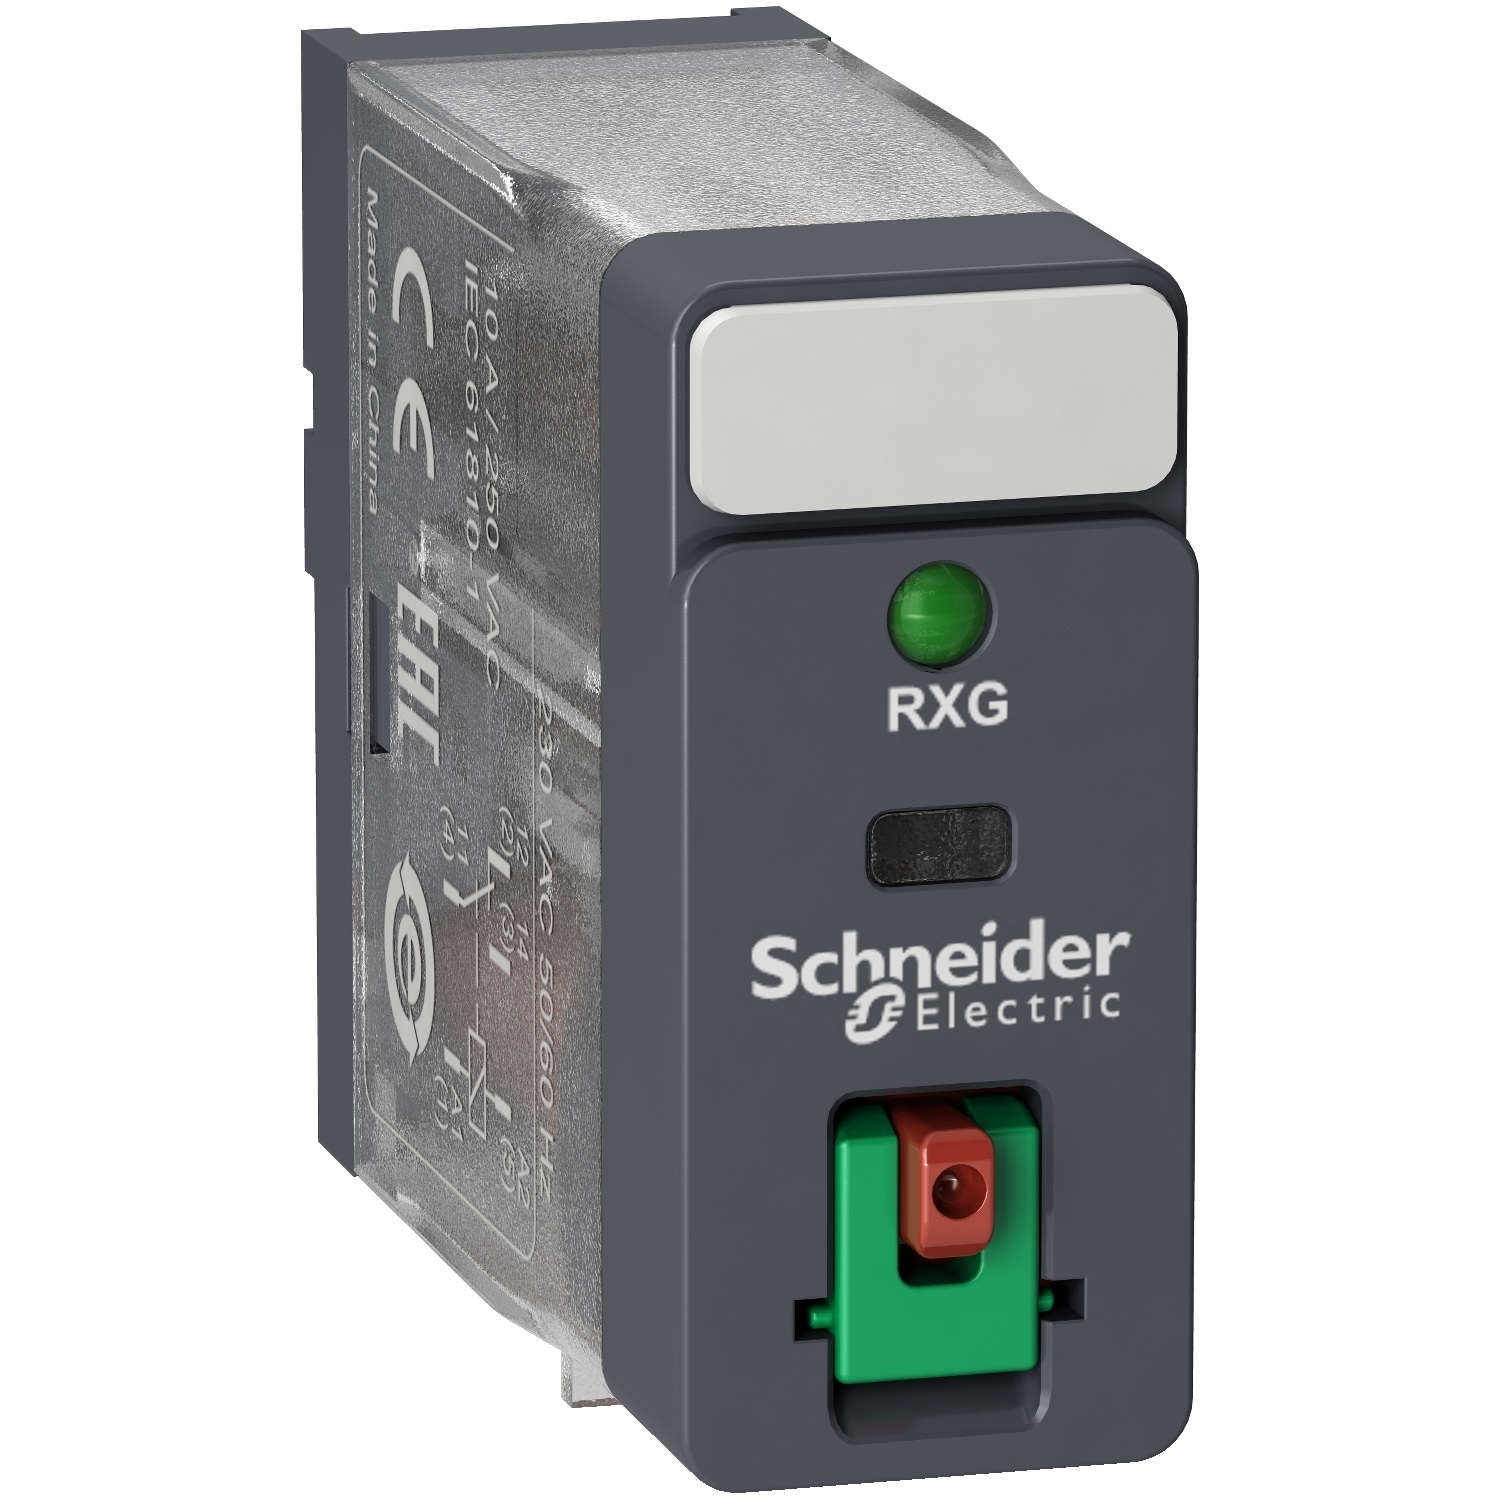 Schneider 240VAC 2 Pole Relay 5A SPDT w/ Indicator & Test Button